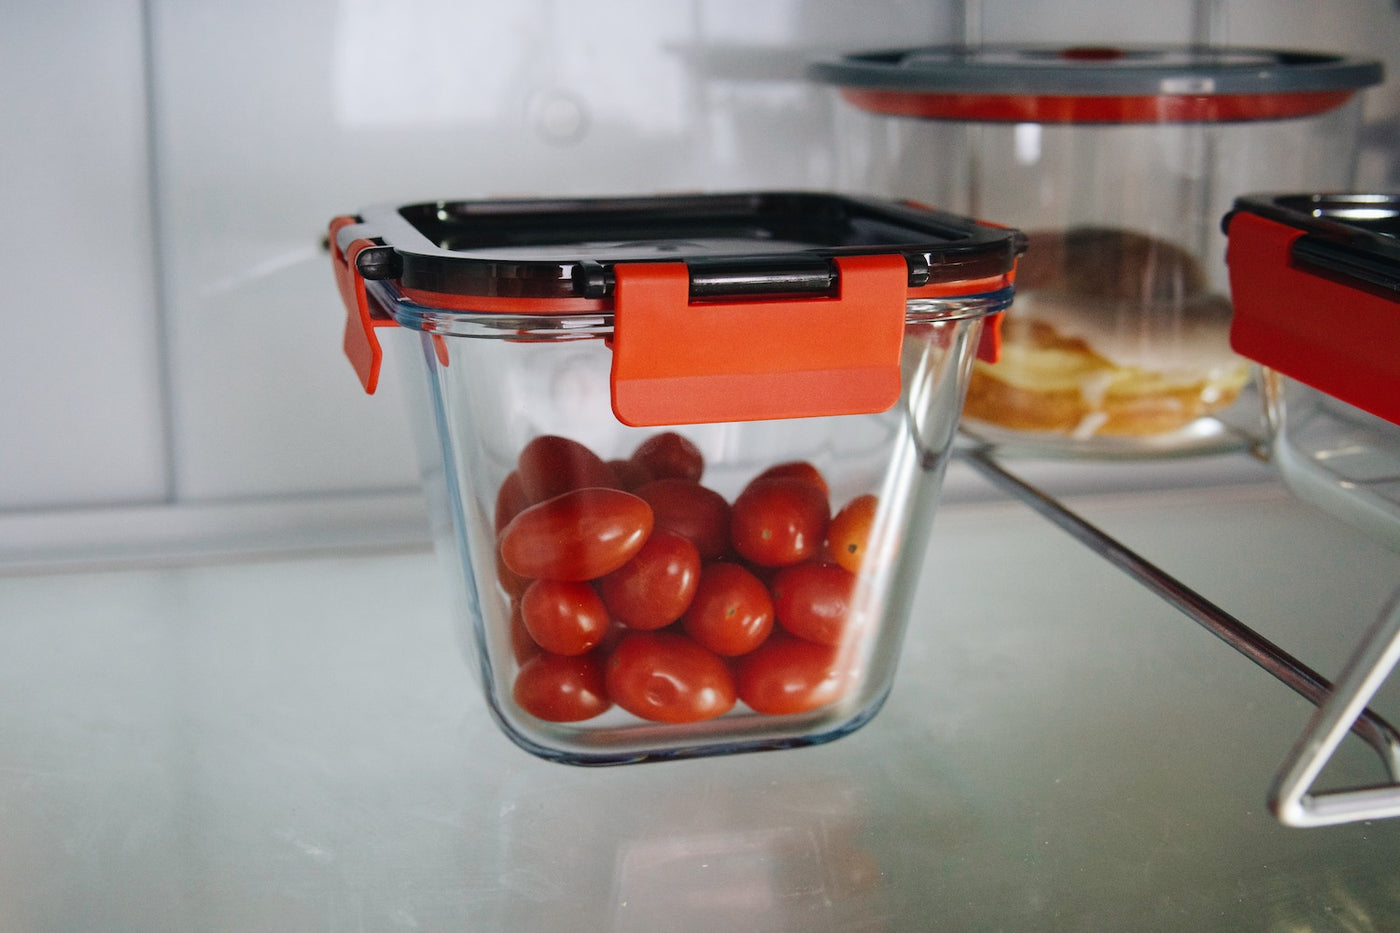 Skleněná dóza na potraviny Simax v lednici s rajčaty